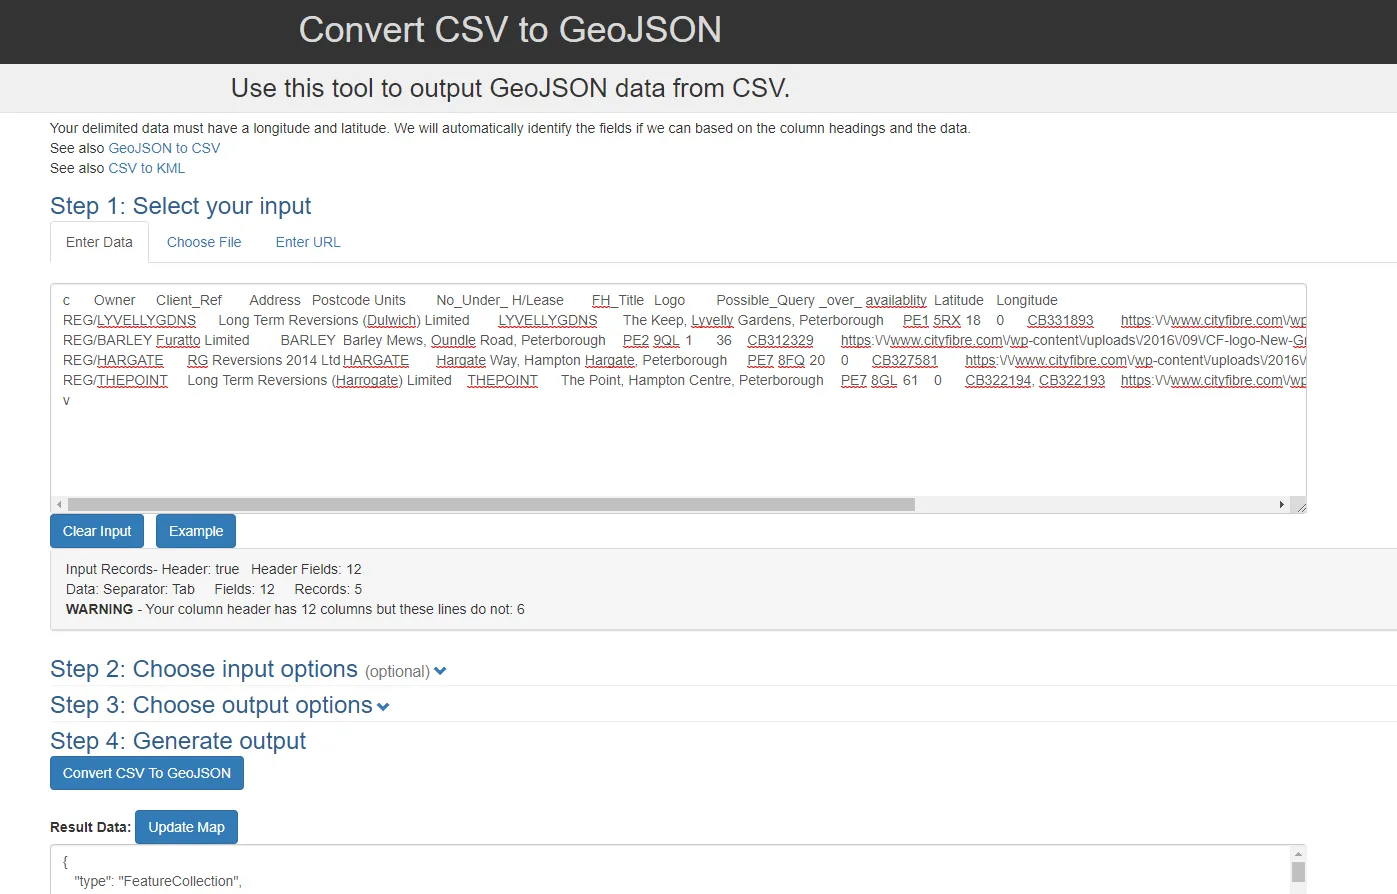 CSV to GeoJSON conversion